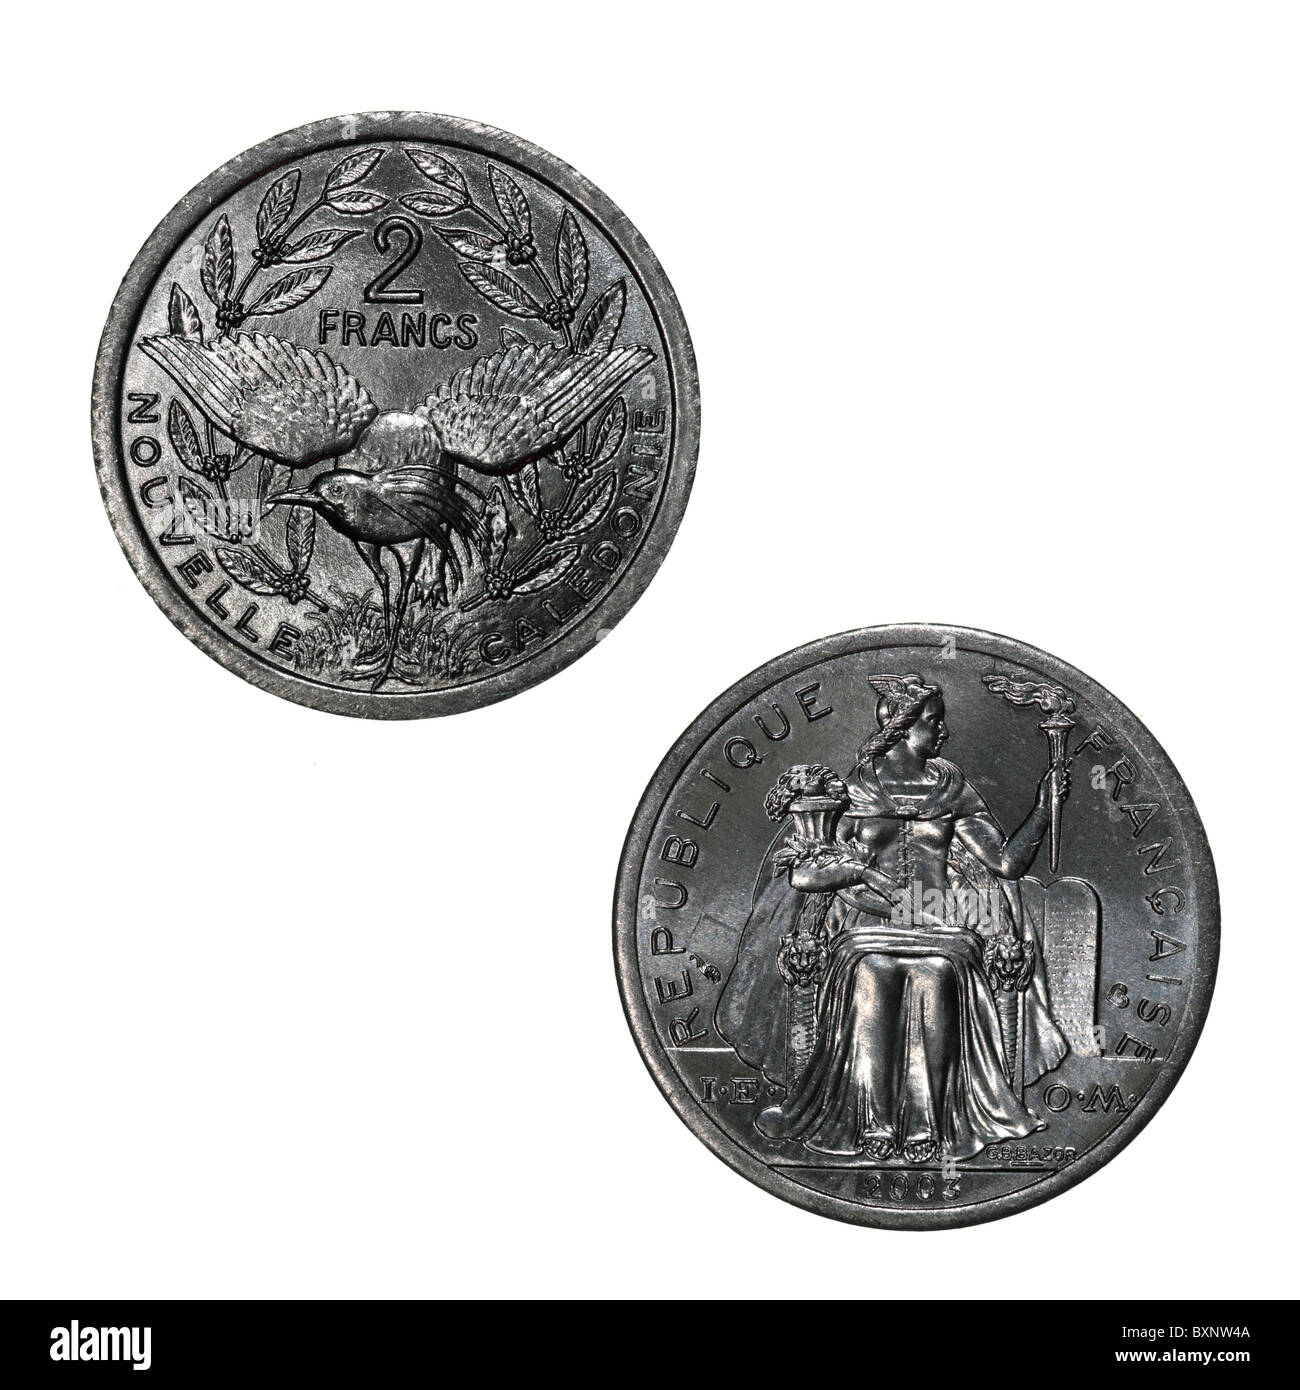 Neukaledonien - 2 Francs Münze, entworfen von G.B.Bazor, mit sitzender Mariene auf der Obverse und einem Kagu-Vogel (Rhynochetos jubatus) auf der Rückseite Stockfoto